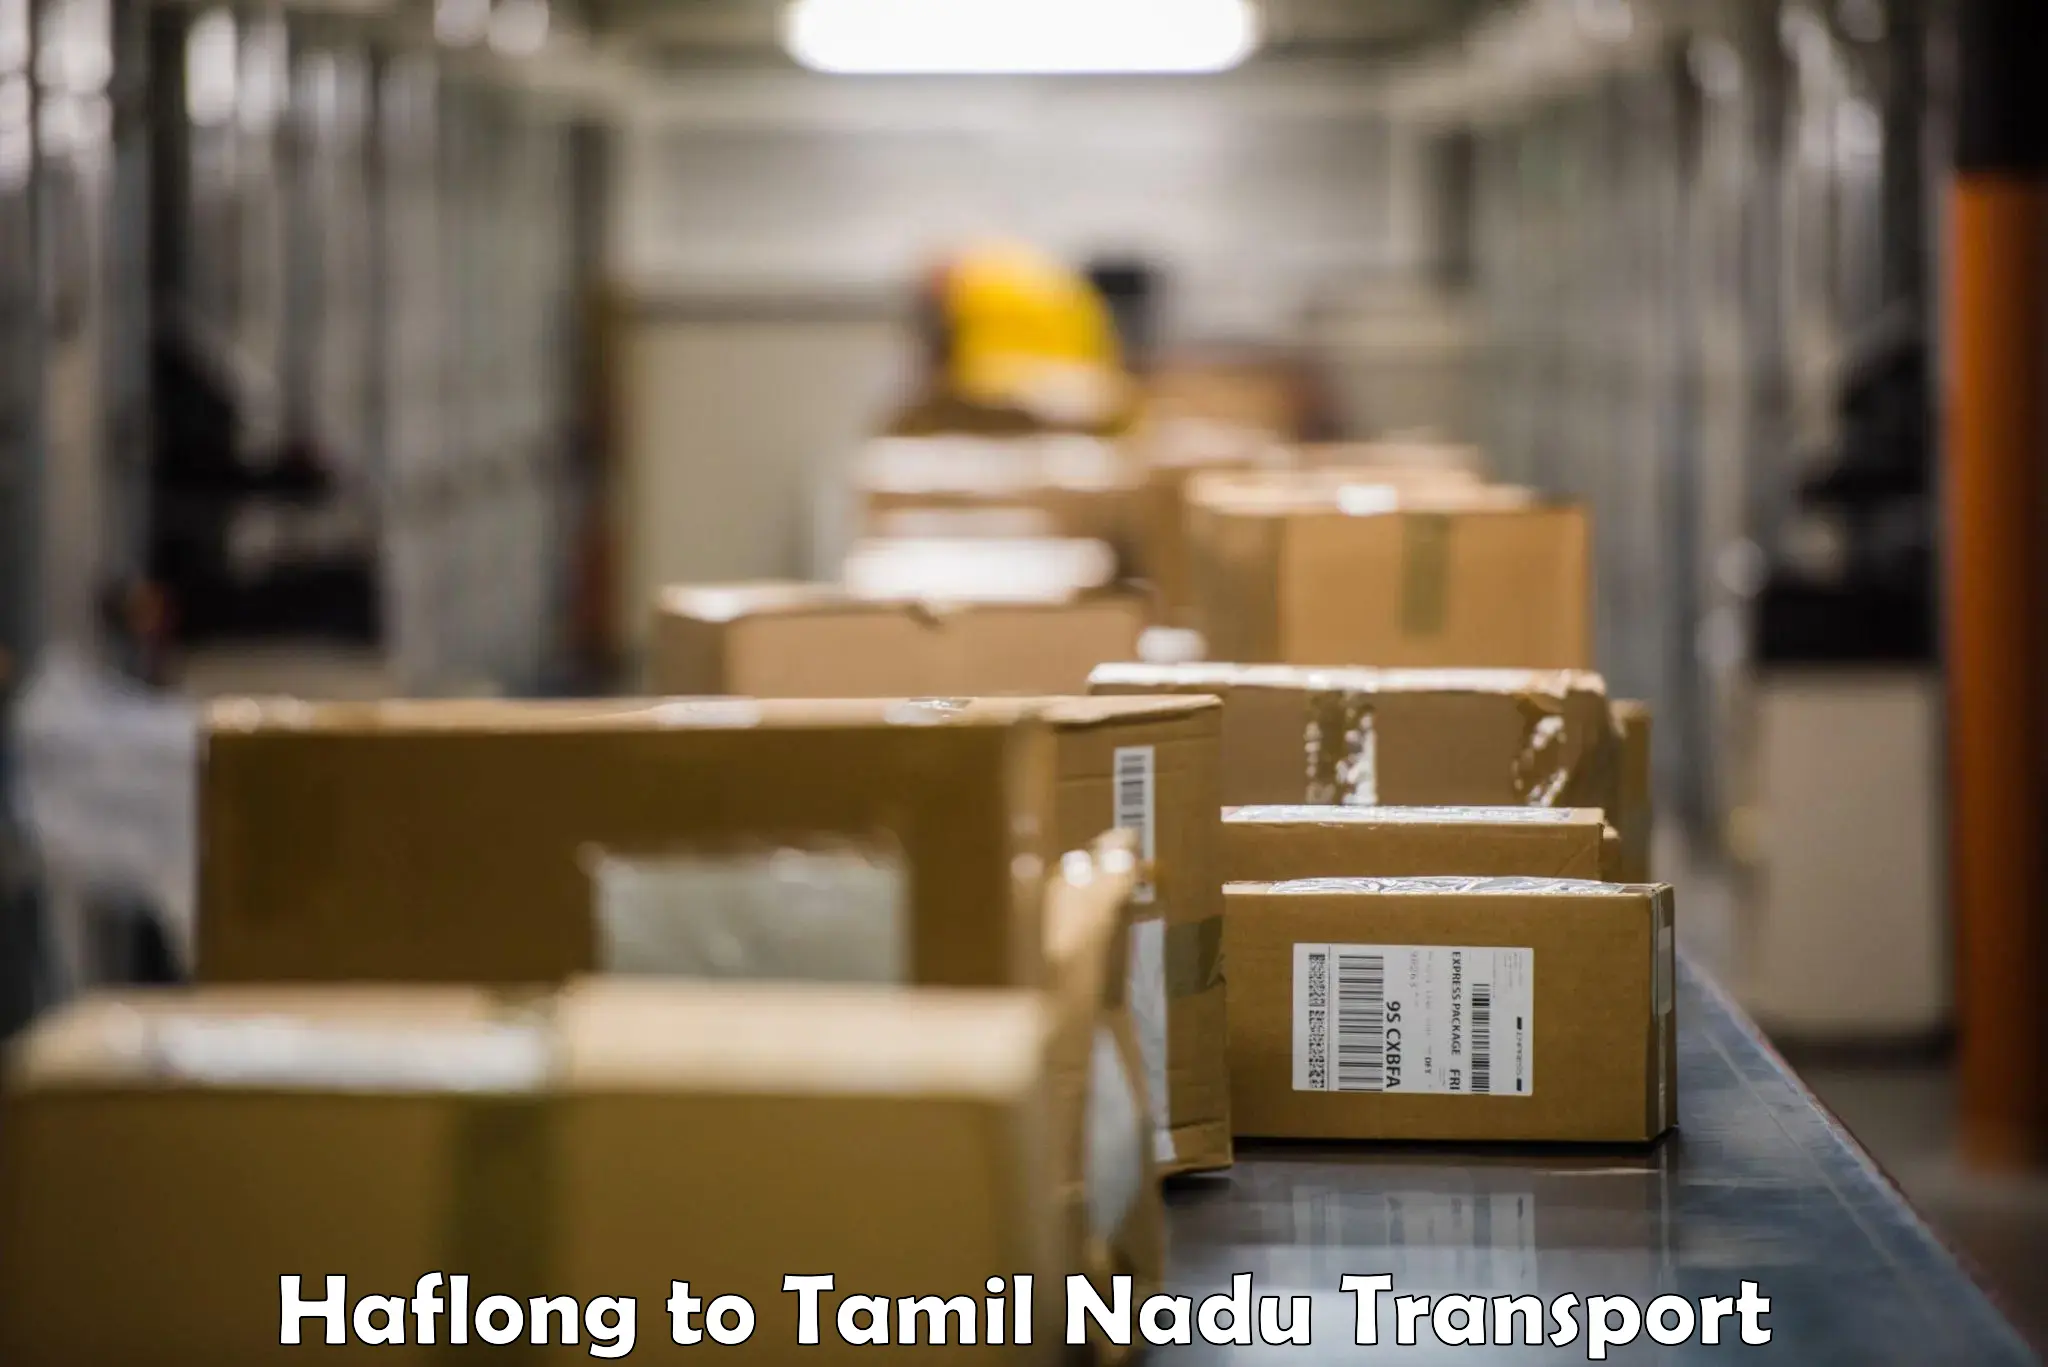 Transportation services Haflong to IIIT Tiruchirappalli